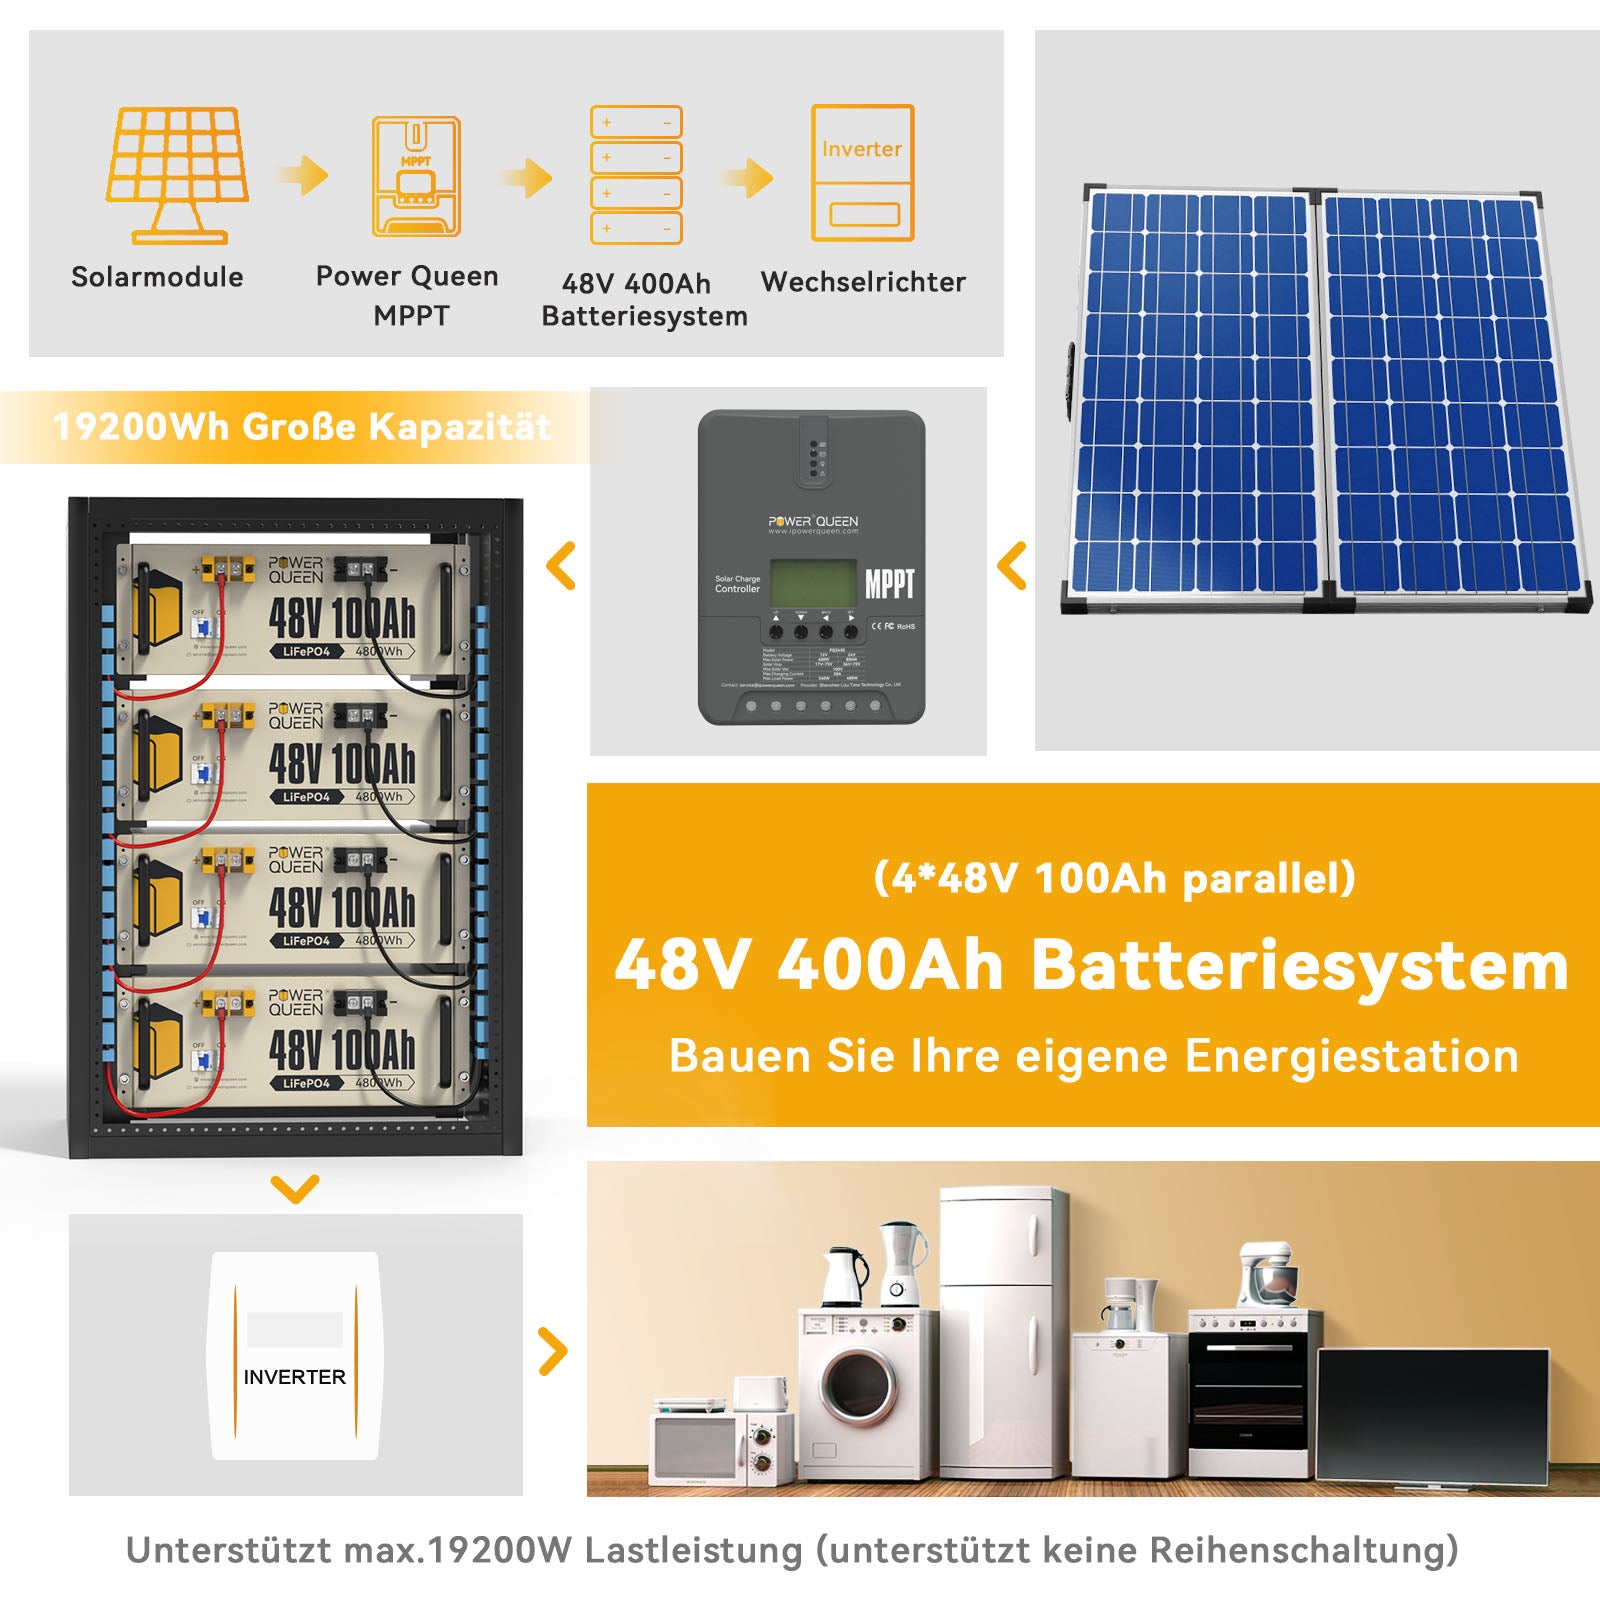 【0% IVA】Batería Power Queen 48V 100Ah LiFePO4, BMS 100A integrado